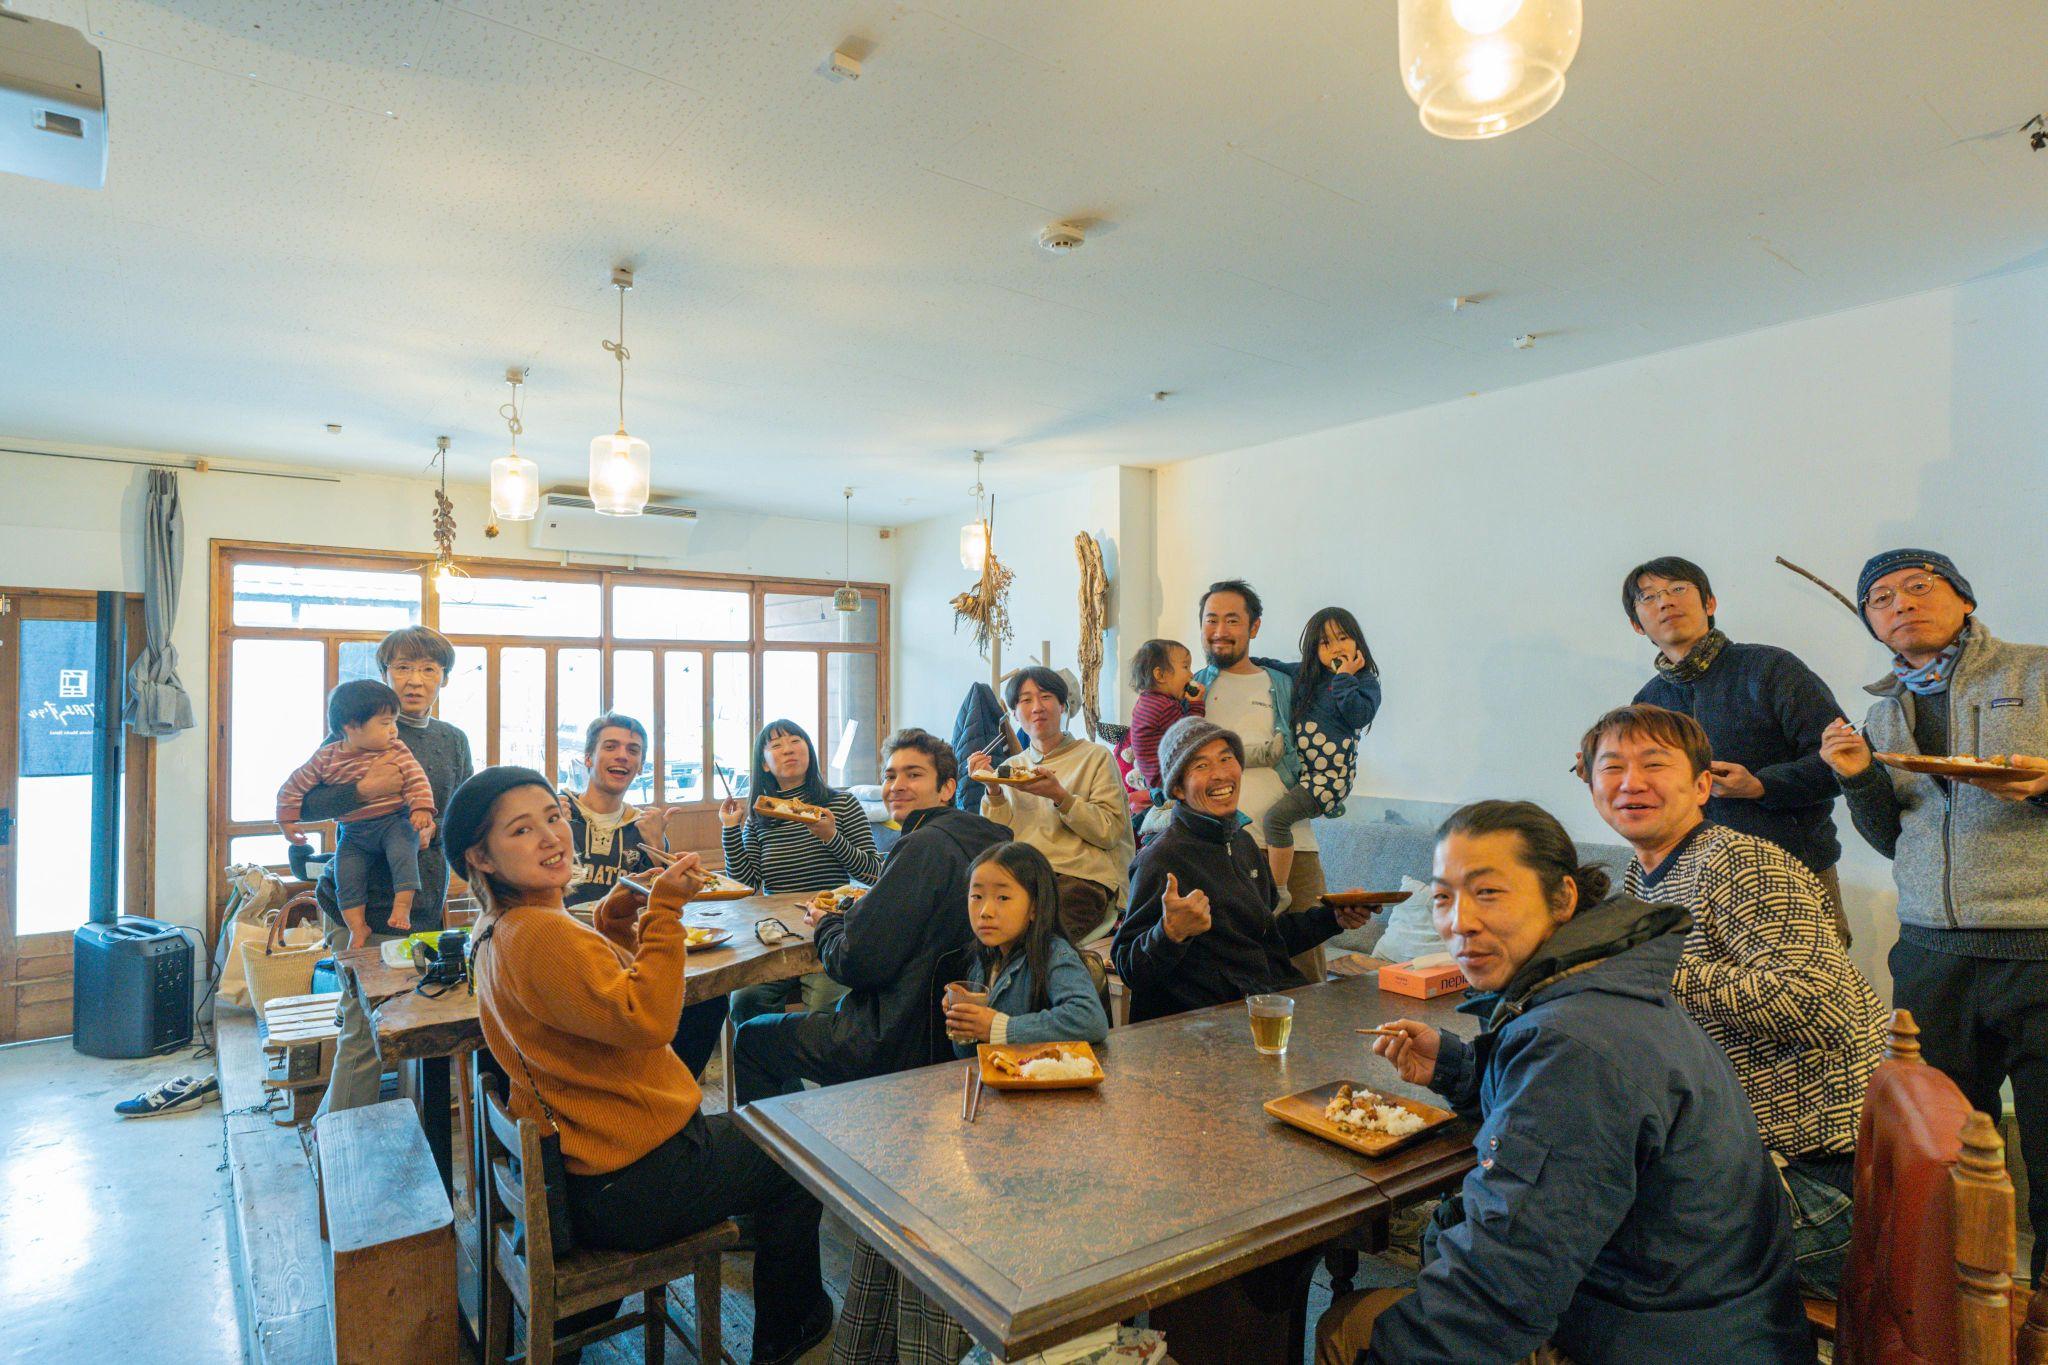 リモートワークと共に始まった日本各地をめぐる旅を経て、辿り着いた竹田市のシェアハウスでの暮らし。